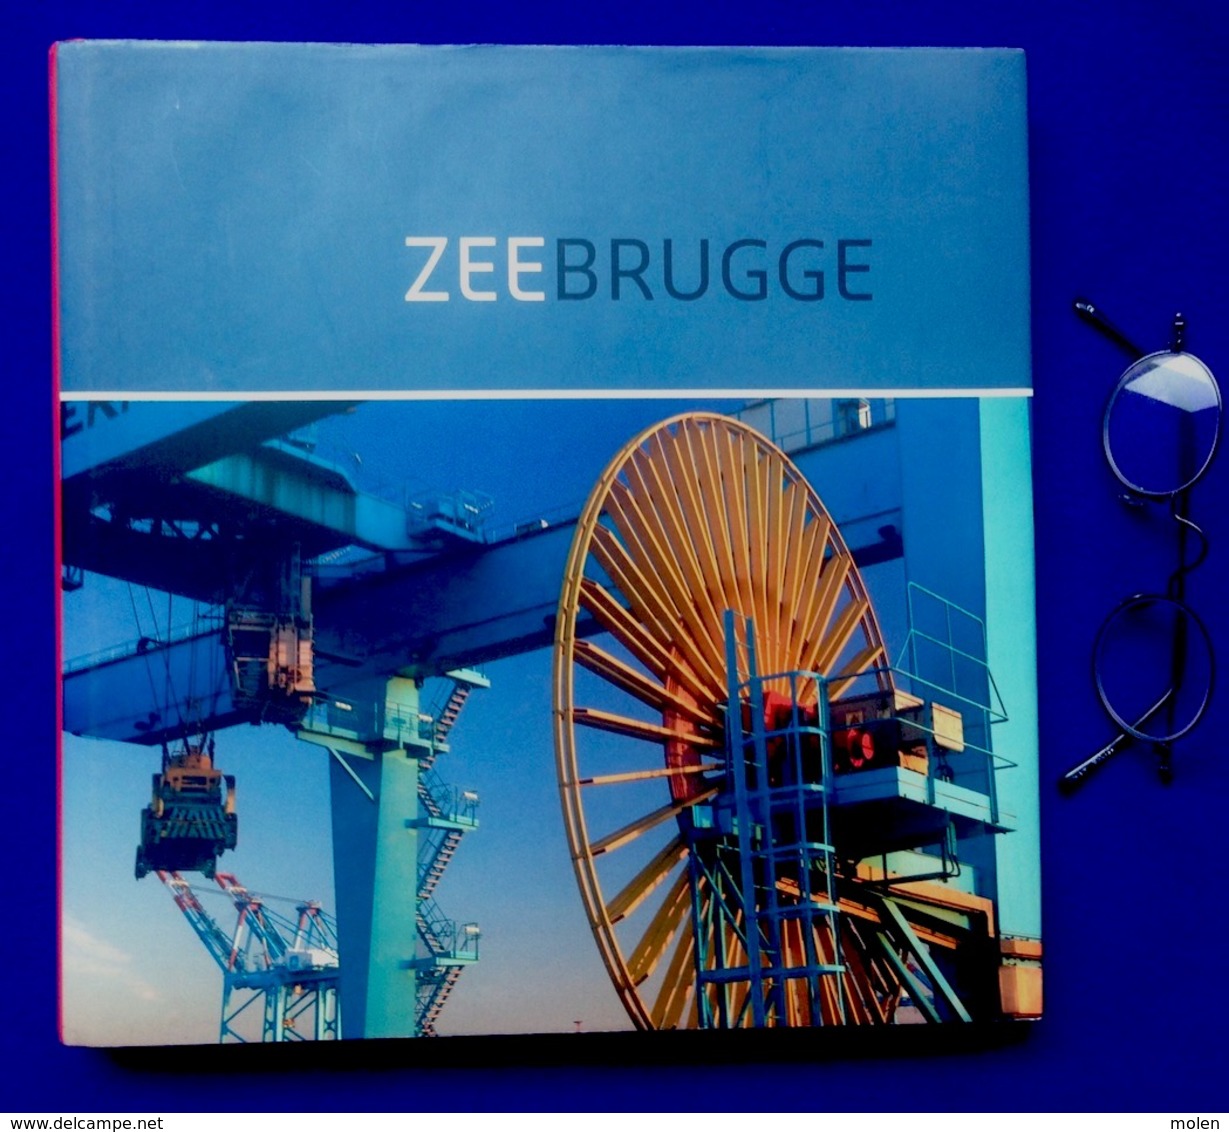 Mooi Foto-boek ZEEBRUGGE & HAVEN 128pp ©2010 BRUGGE SCHIP BOOT KOOPVAARDIJ VISSERIJ MARINE Geschiedenis Heemkunde Z701 - Zeebrugge